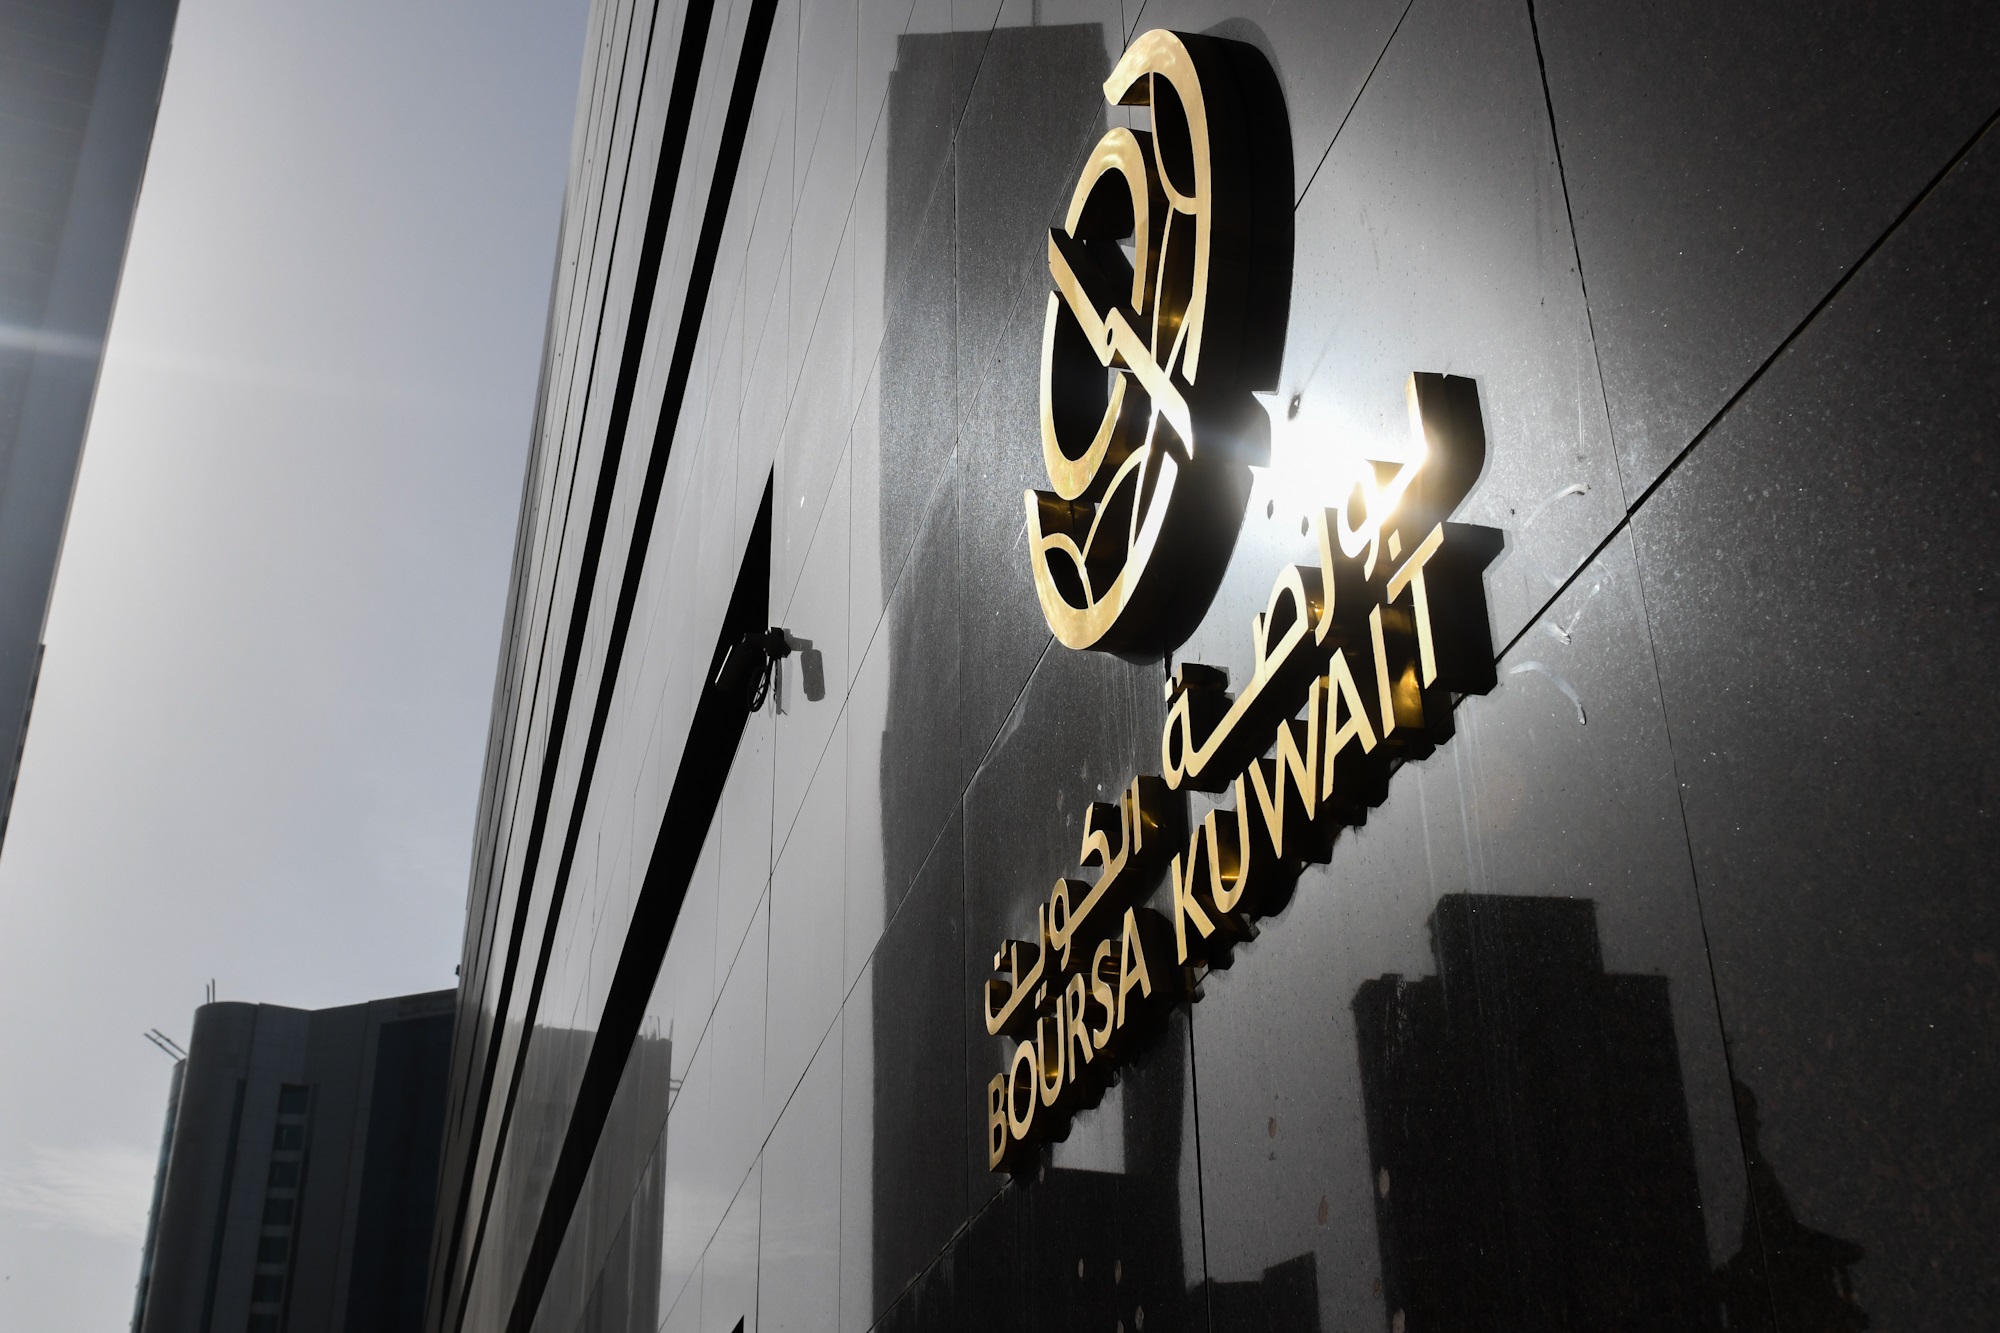 بورصة الكويت تغلق تعاملاتها على انخفاض مؤشرها العام 77ر10 نقطة ليبلغ 87ر7050 بنسبة 15ر0 بالمئة                                                                                                                                                            